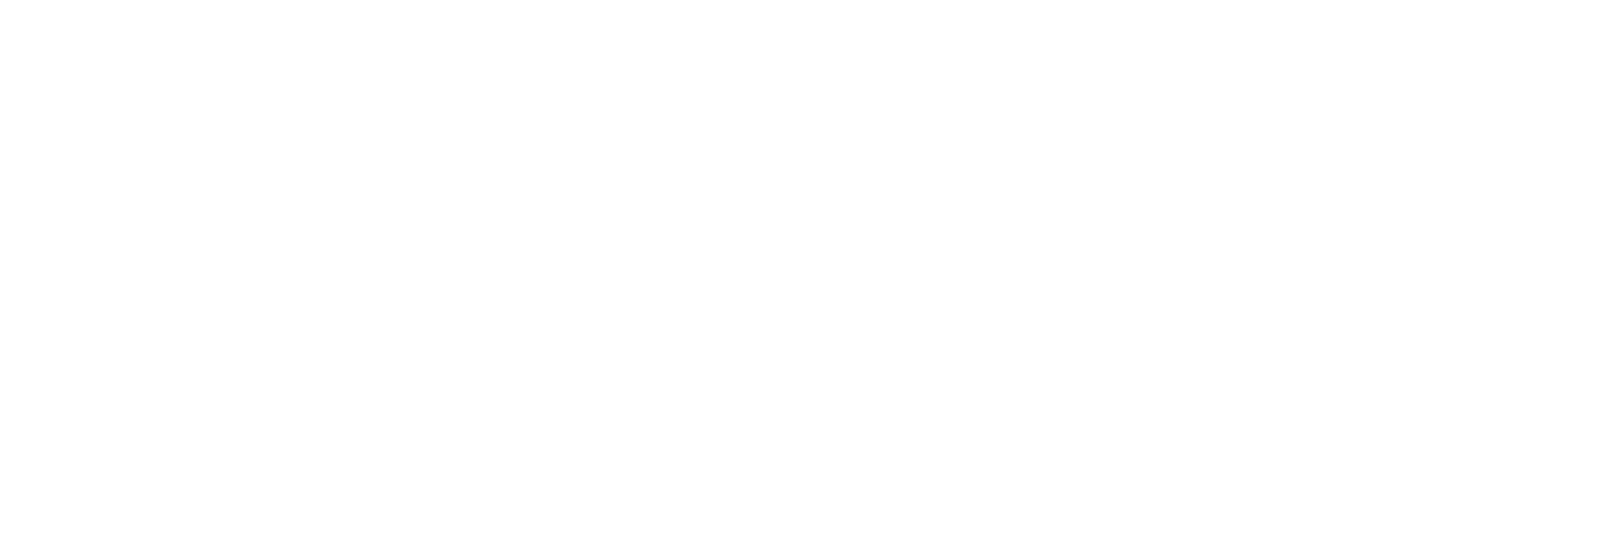 Ovintiv logo large for dark backgrounds (transparent PNG)